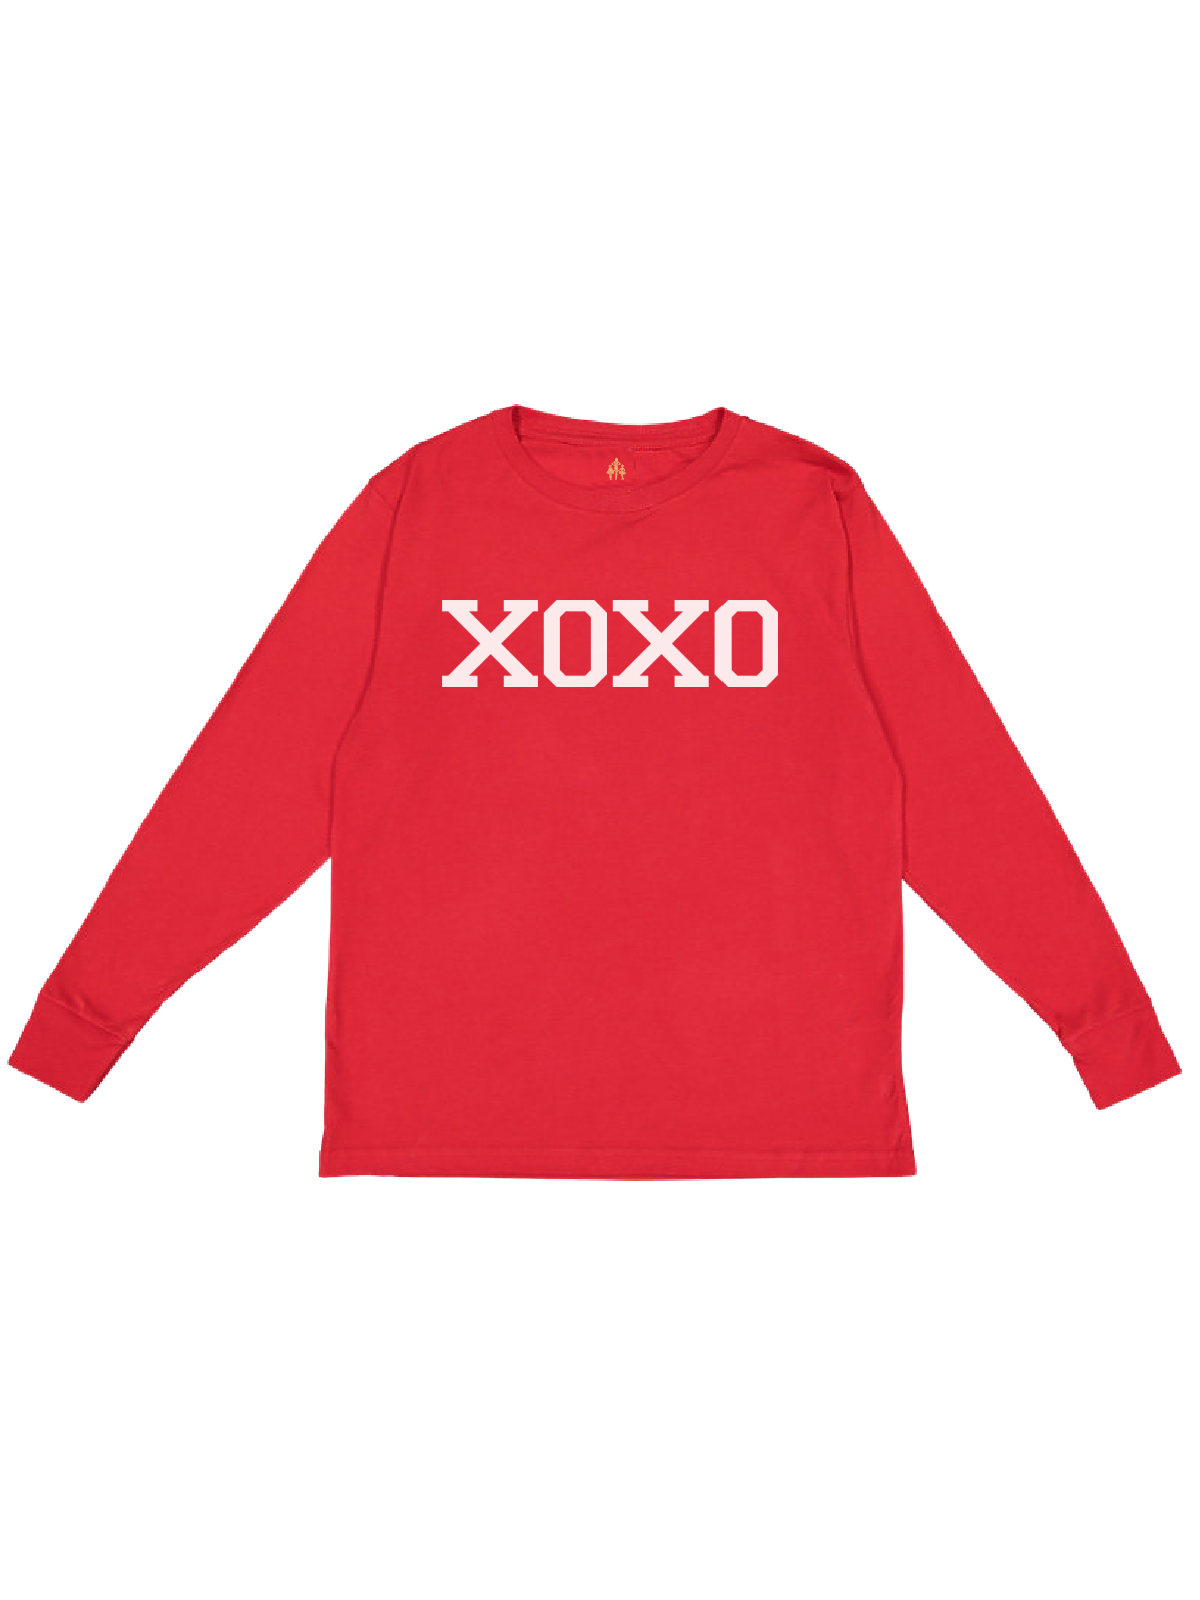 XOXO Kids Short Sleeve Valentine's Day Shirt